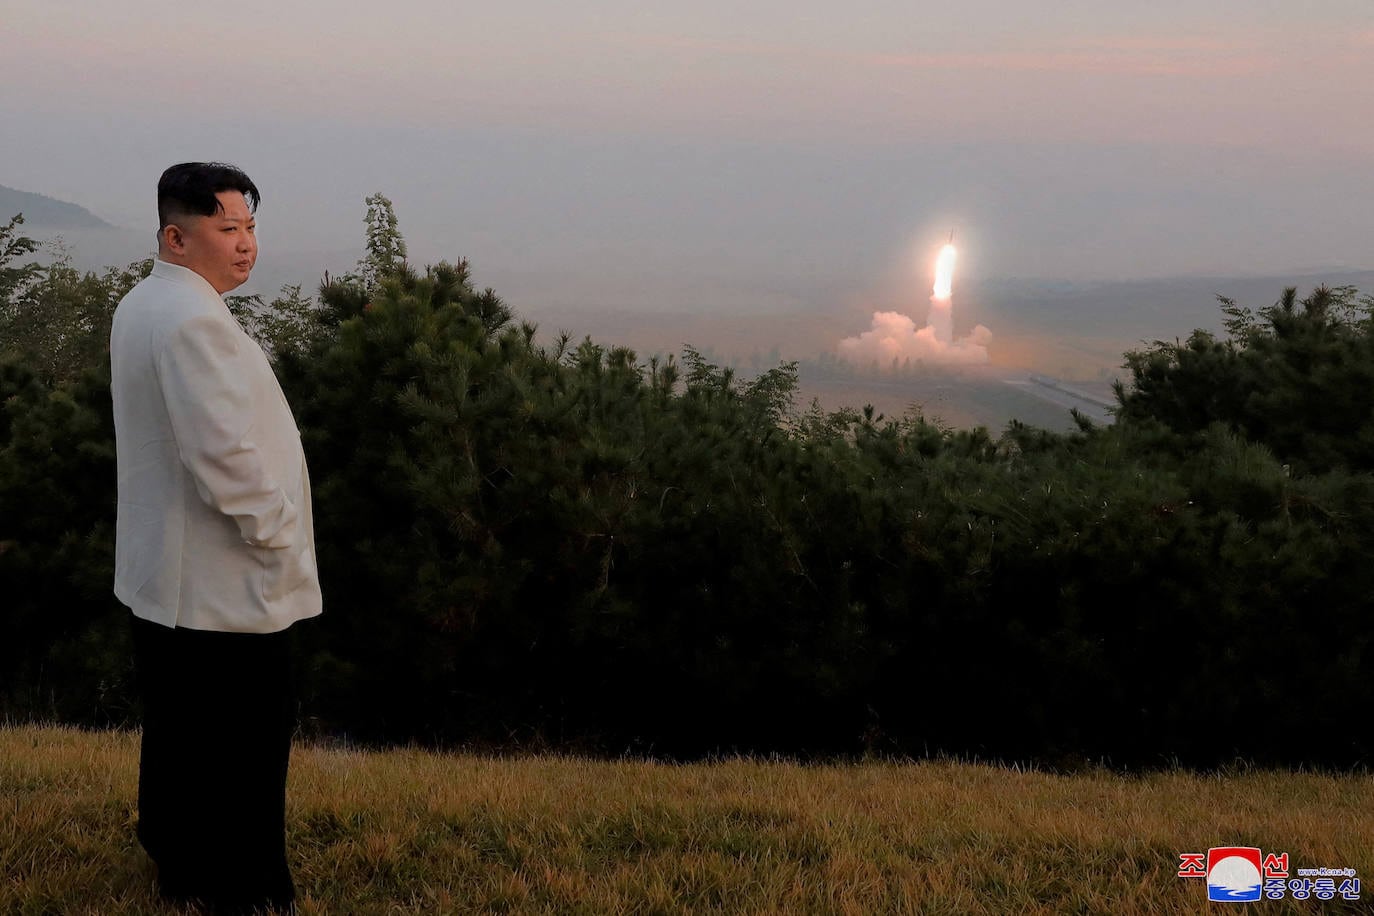 Kim Jong Un contempla el lanzamiento de un misil en una imagen difundida en octubre 